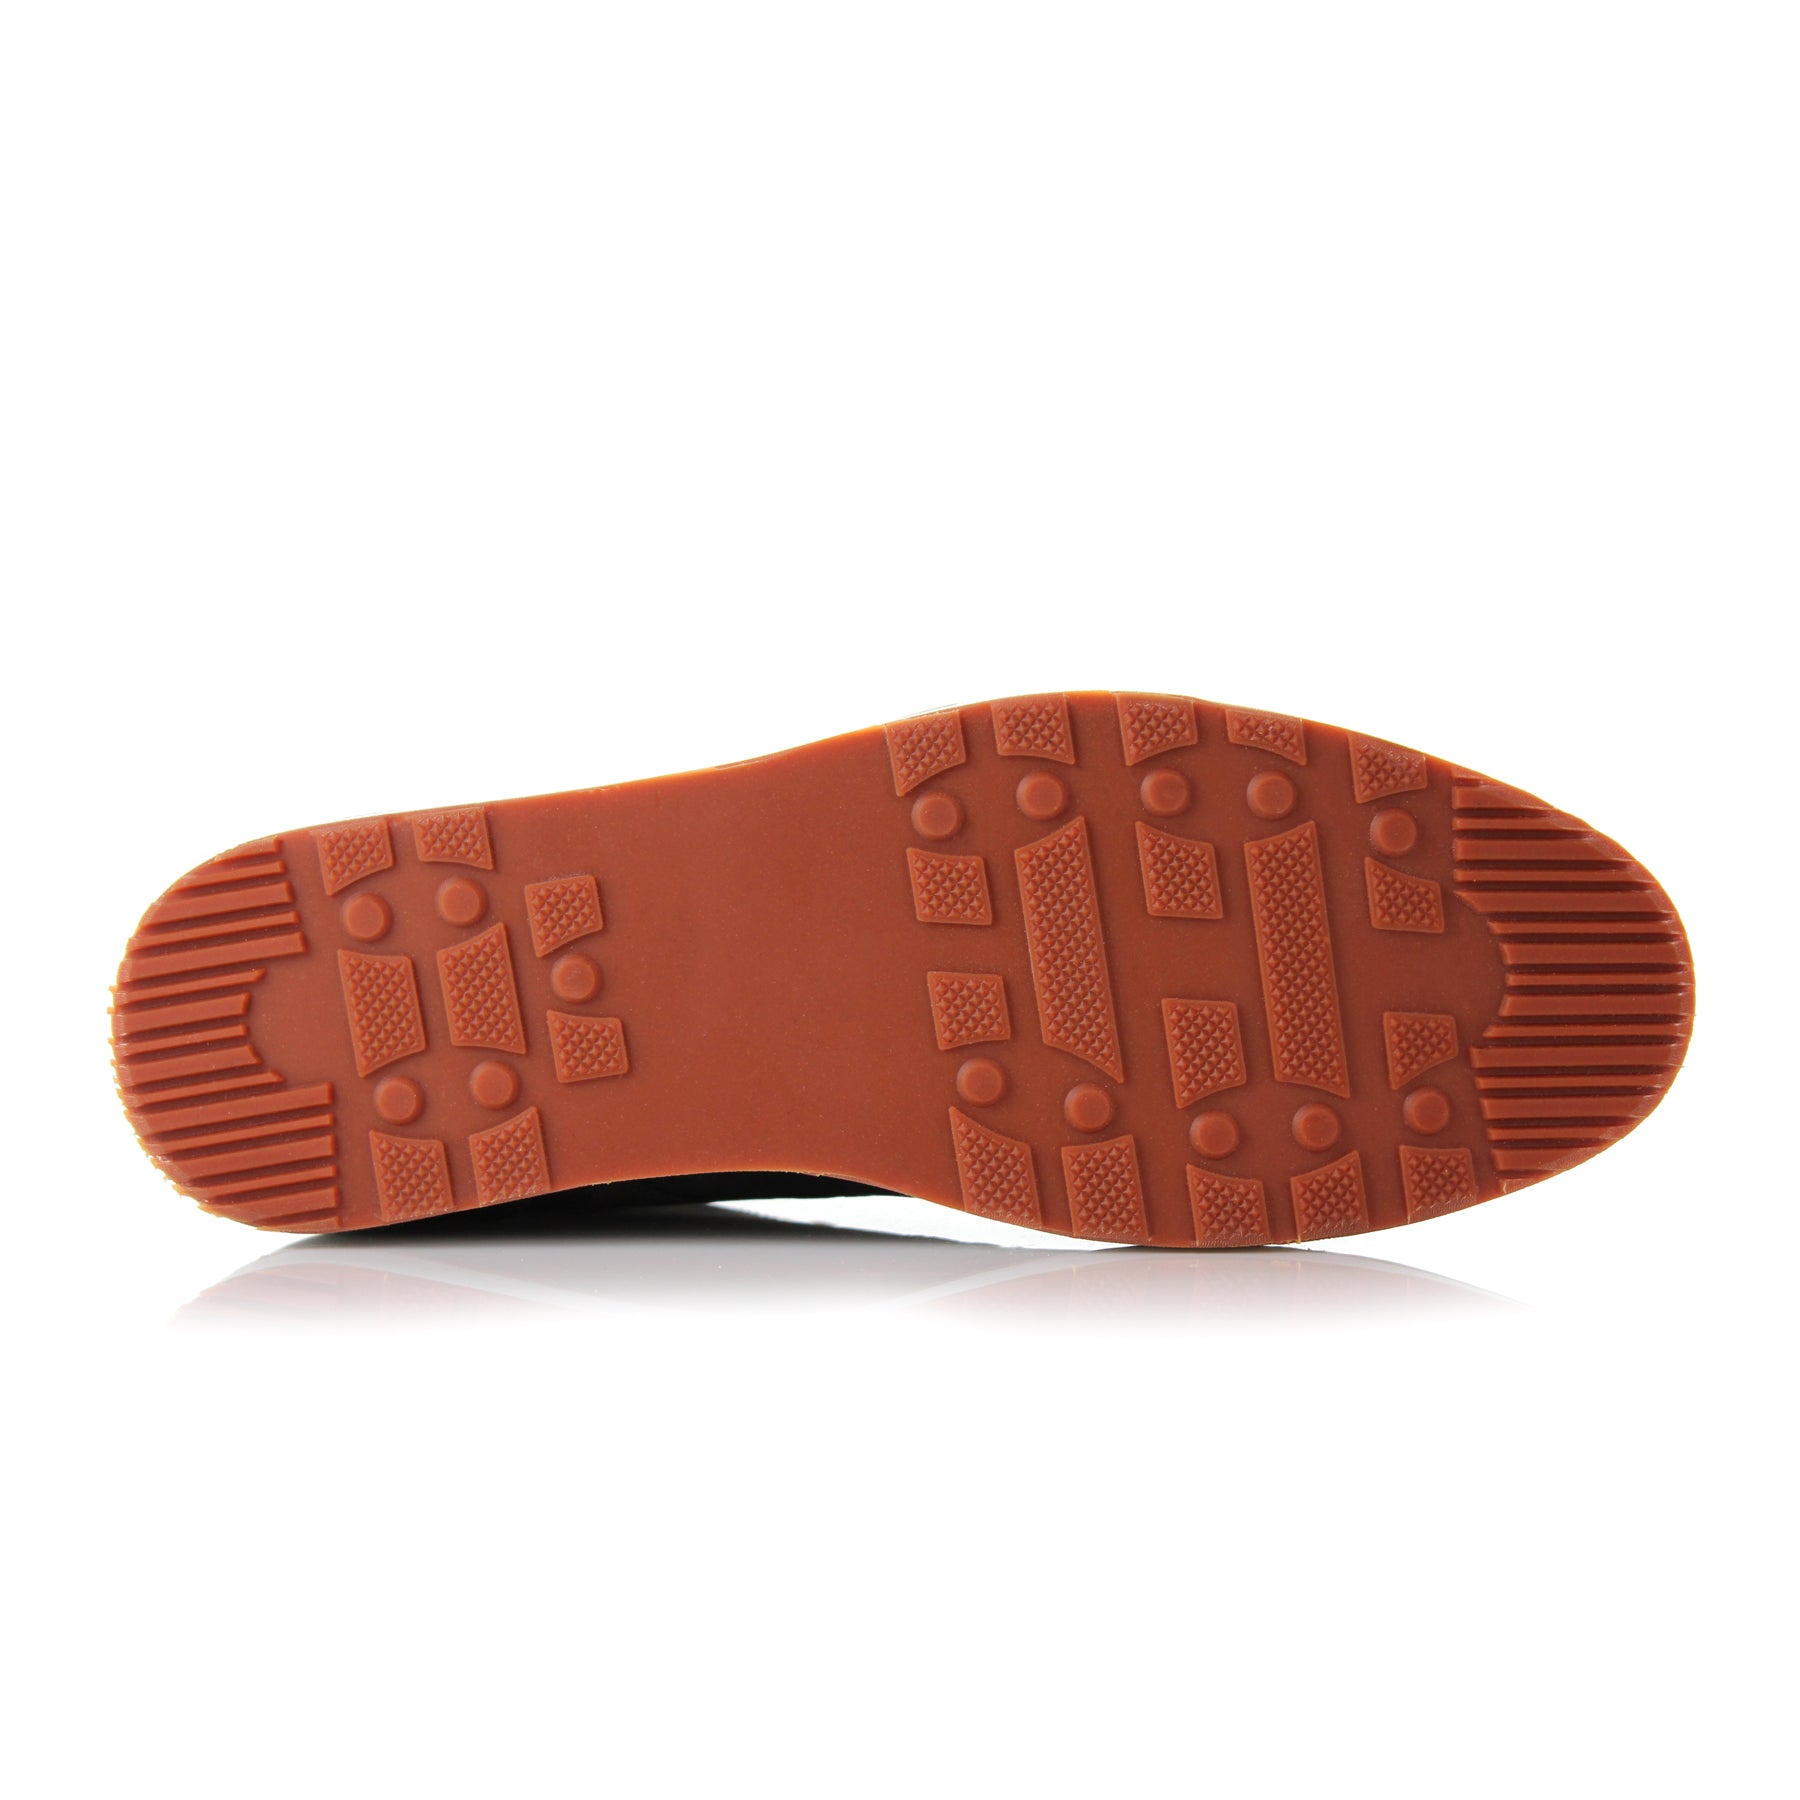 Denim Sneakers | Jax by Ferro Aldo | Conal Footwear | Bottom Sole Angle View